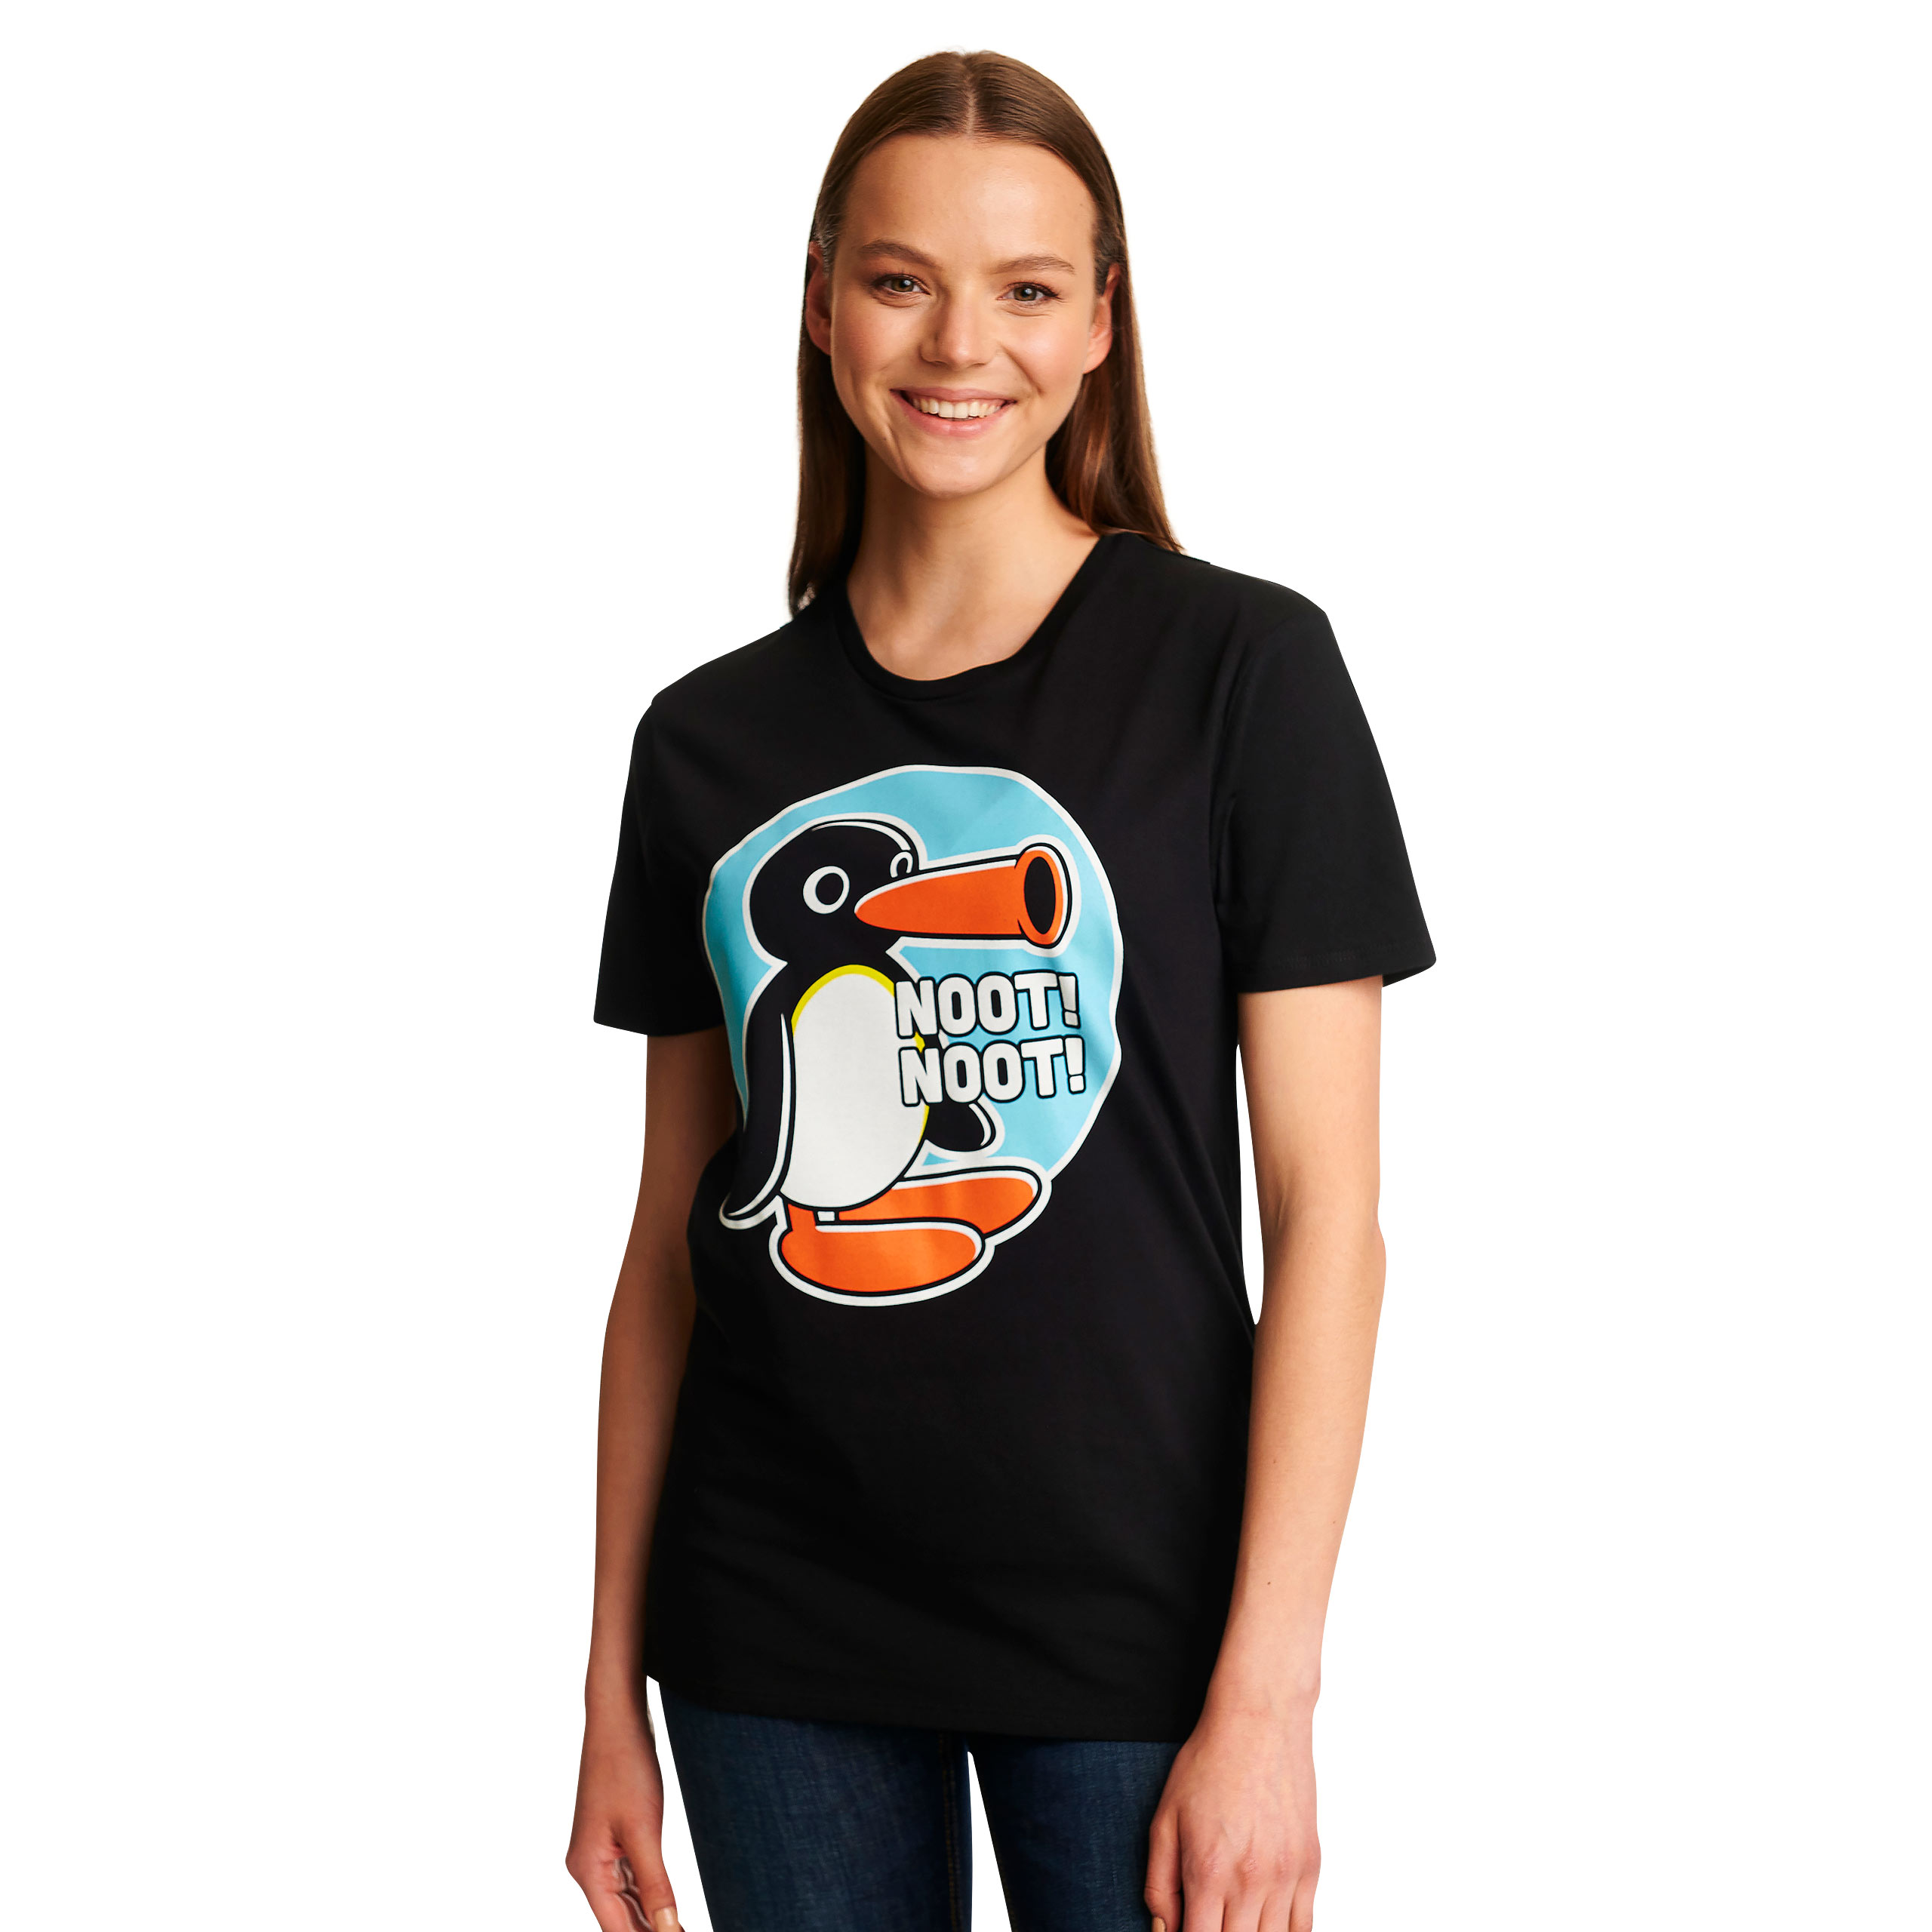 Noot Noot T-Shirt für Pingu Fans schwarz